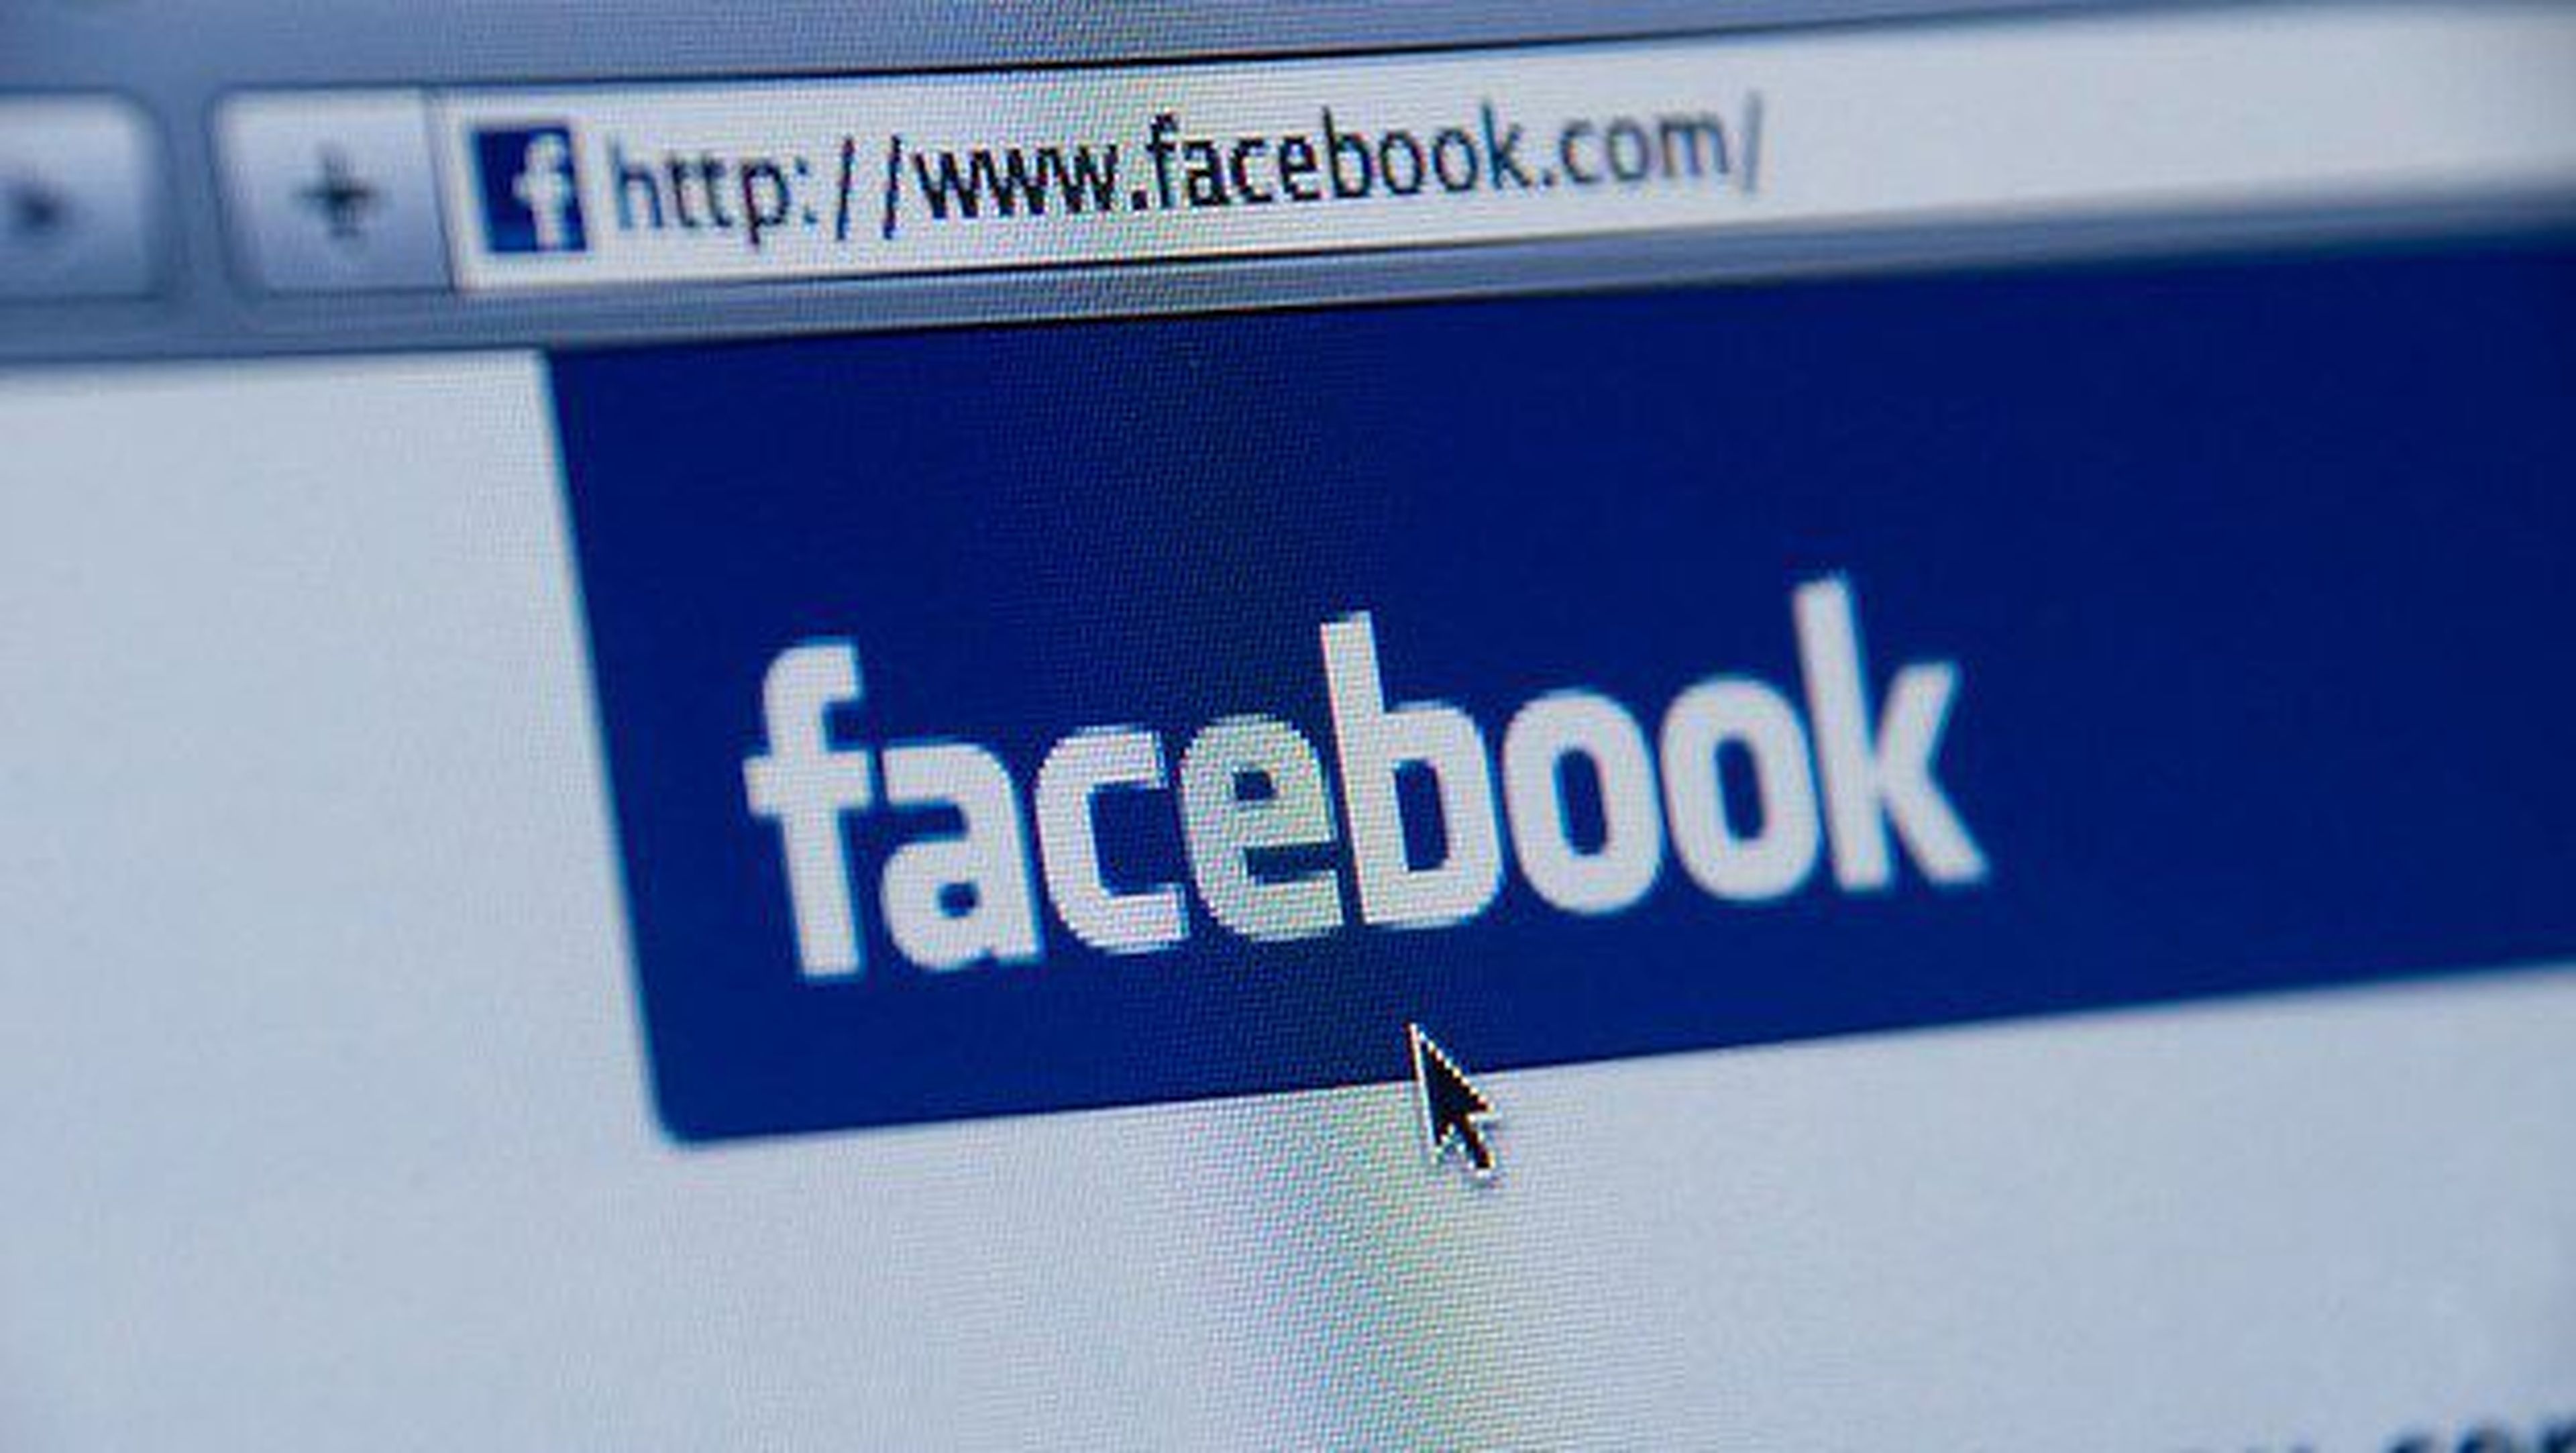 Borrar a un compañero en Facebook podría ser acoso laboral